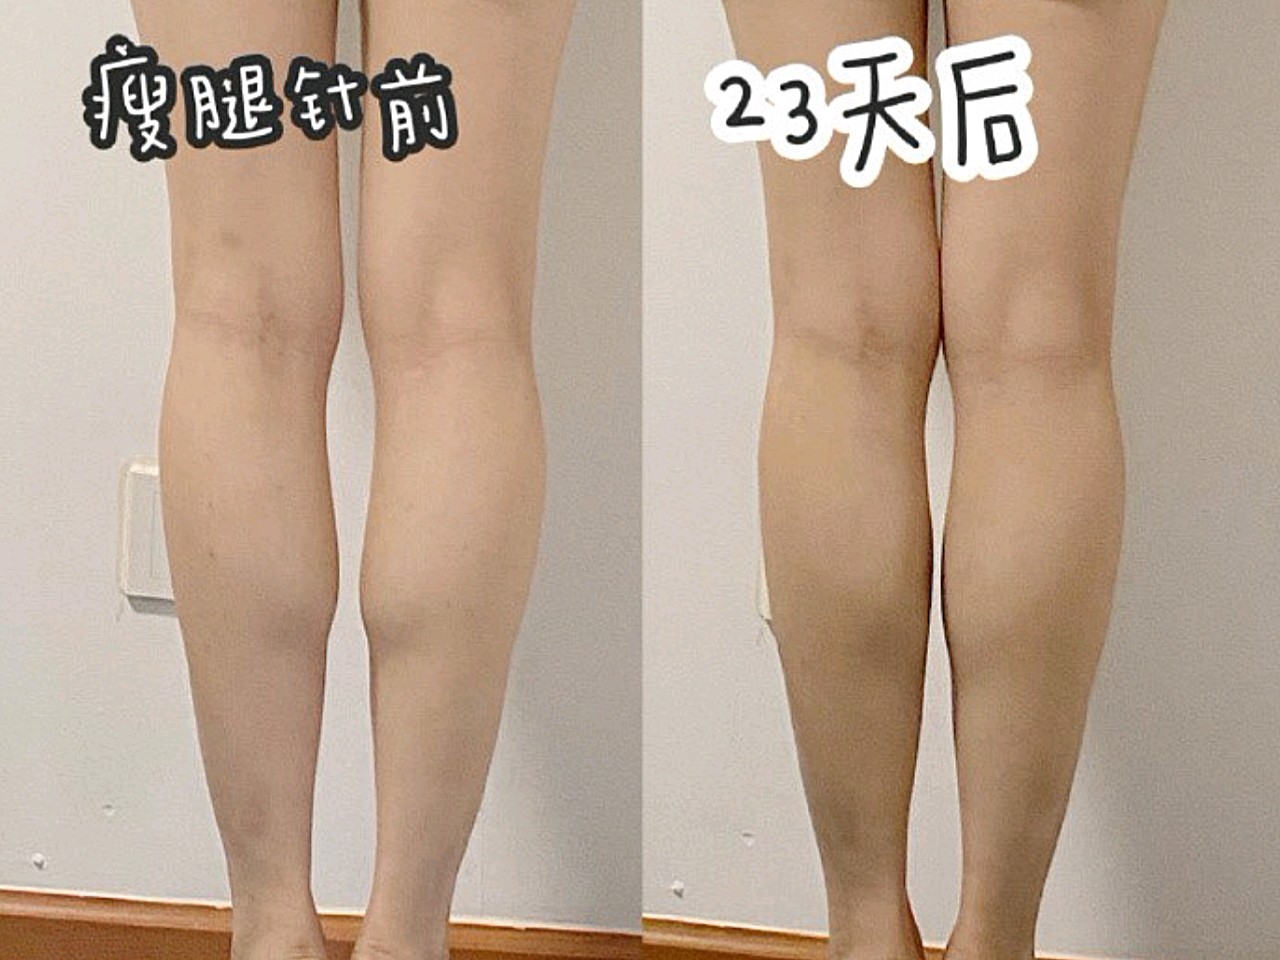 瘦腿针打完23天前后对比,虽然腿围双腿只减了一厘米